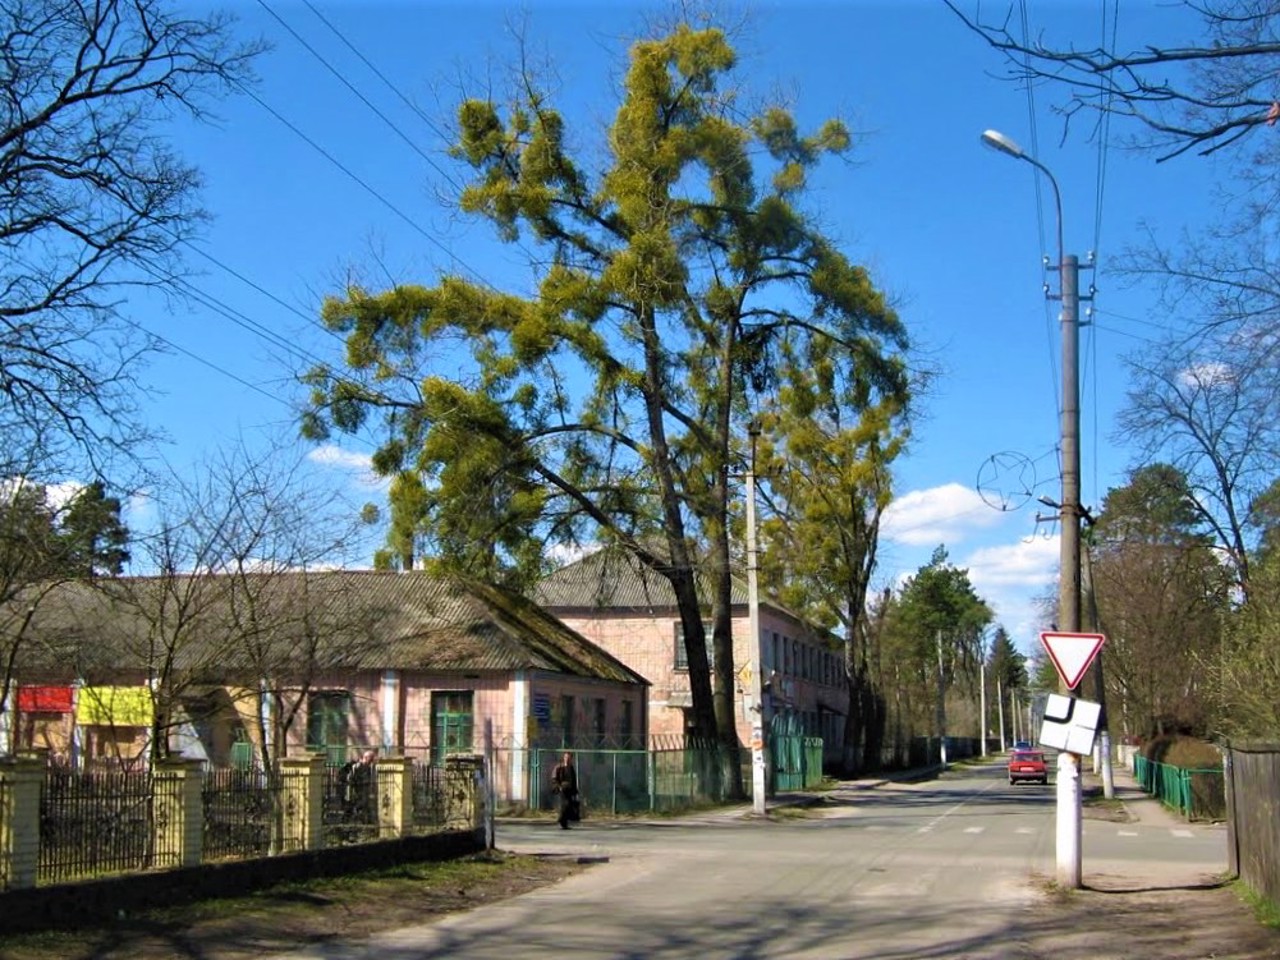 Klavdiievo-Tarasove Village